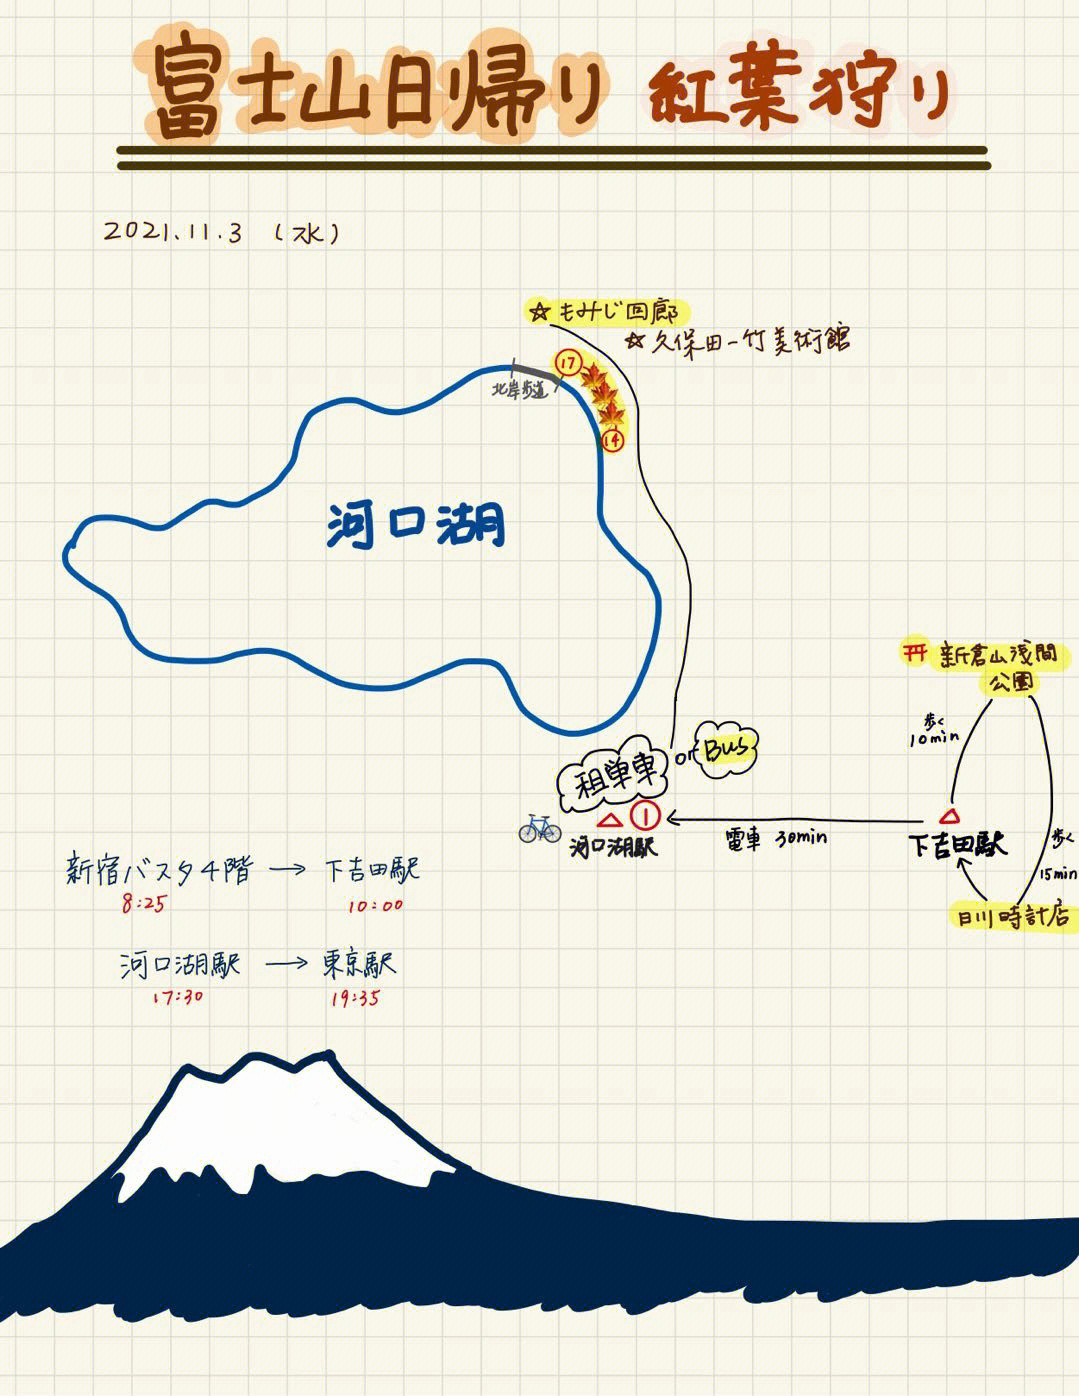 日本富士山地理位置图片